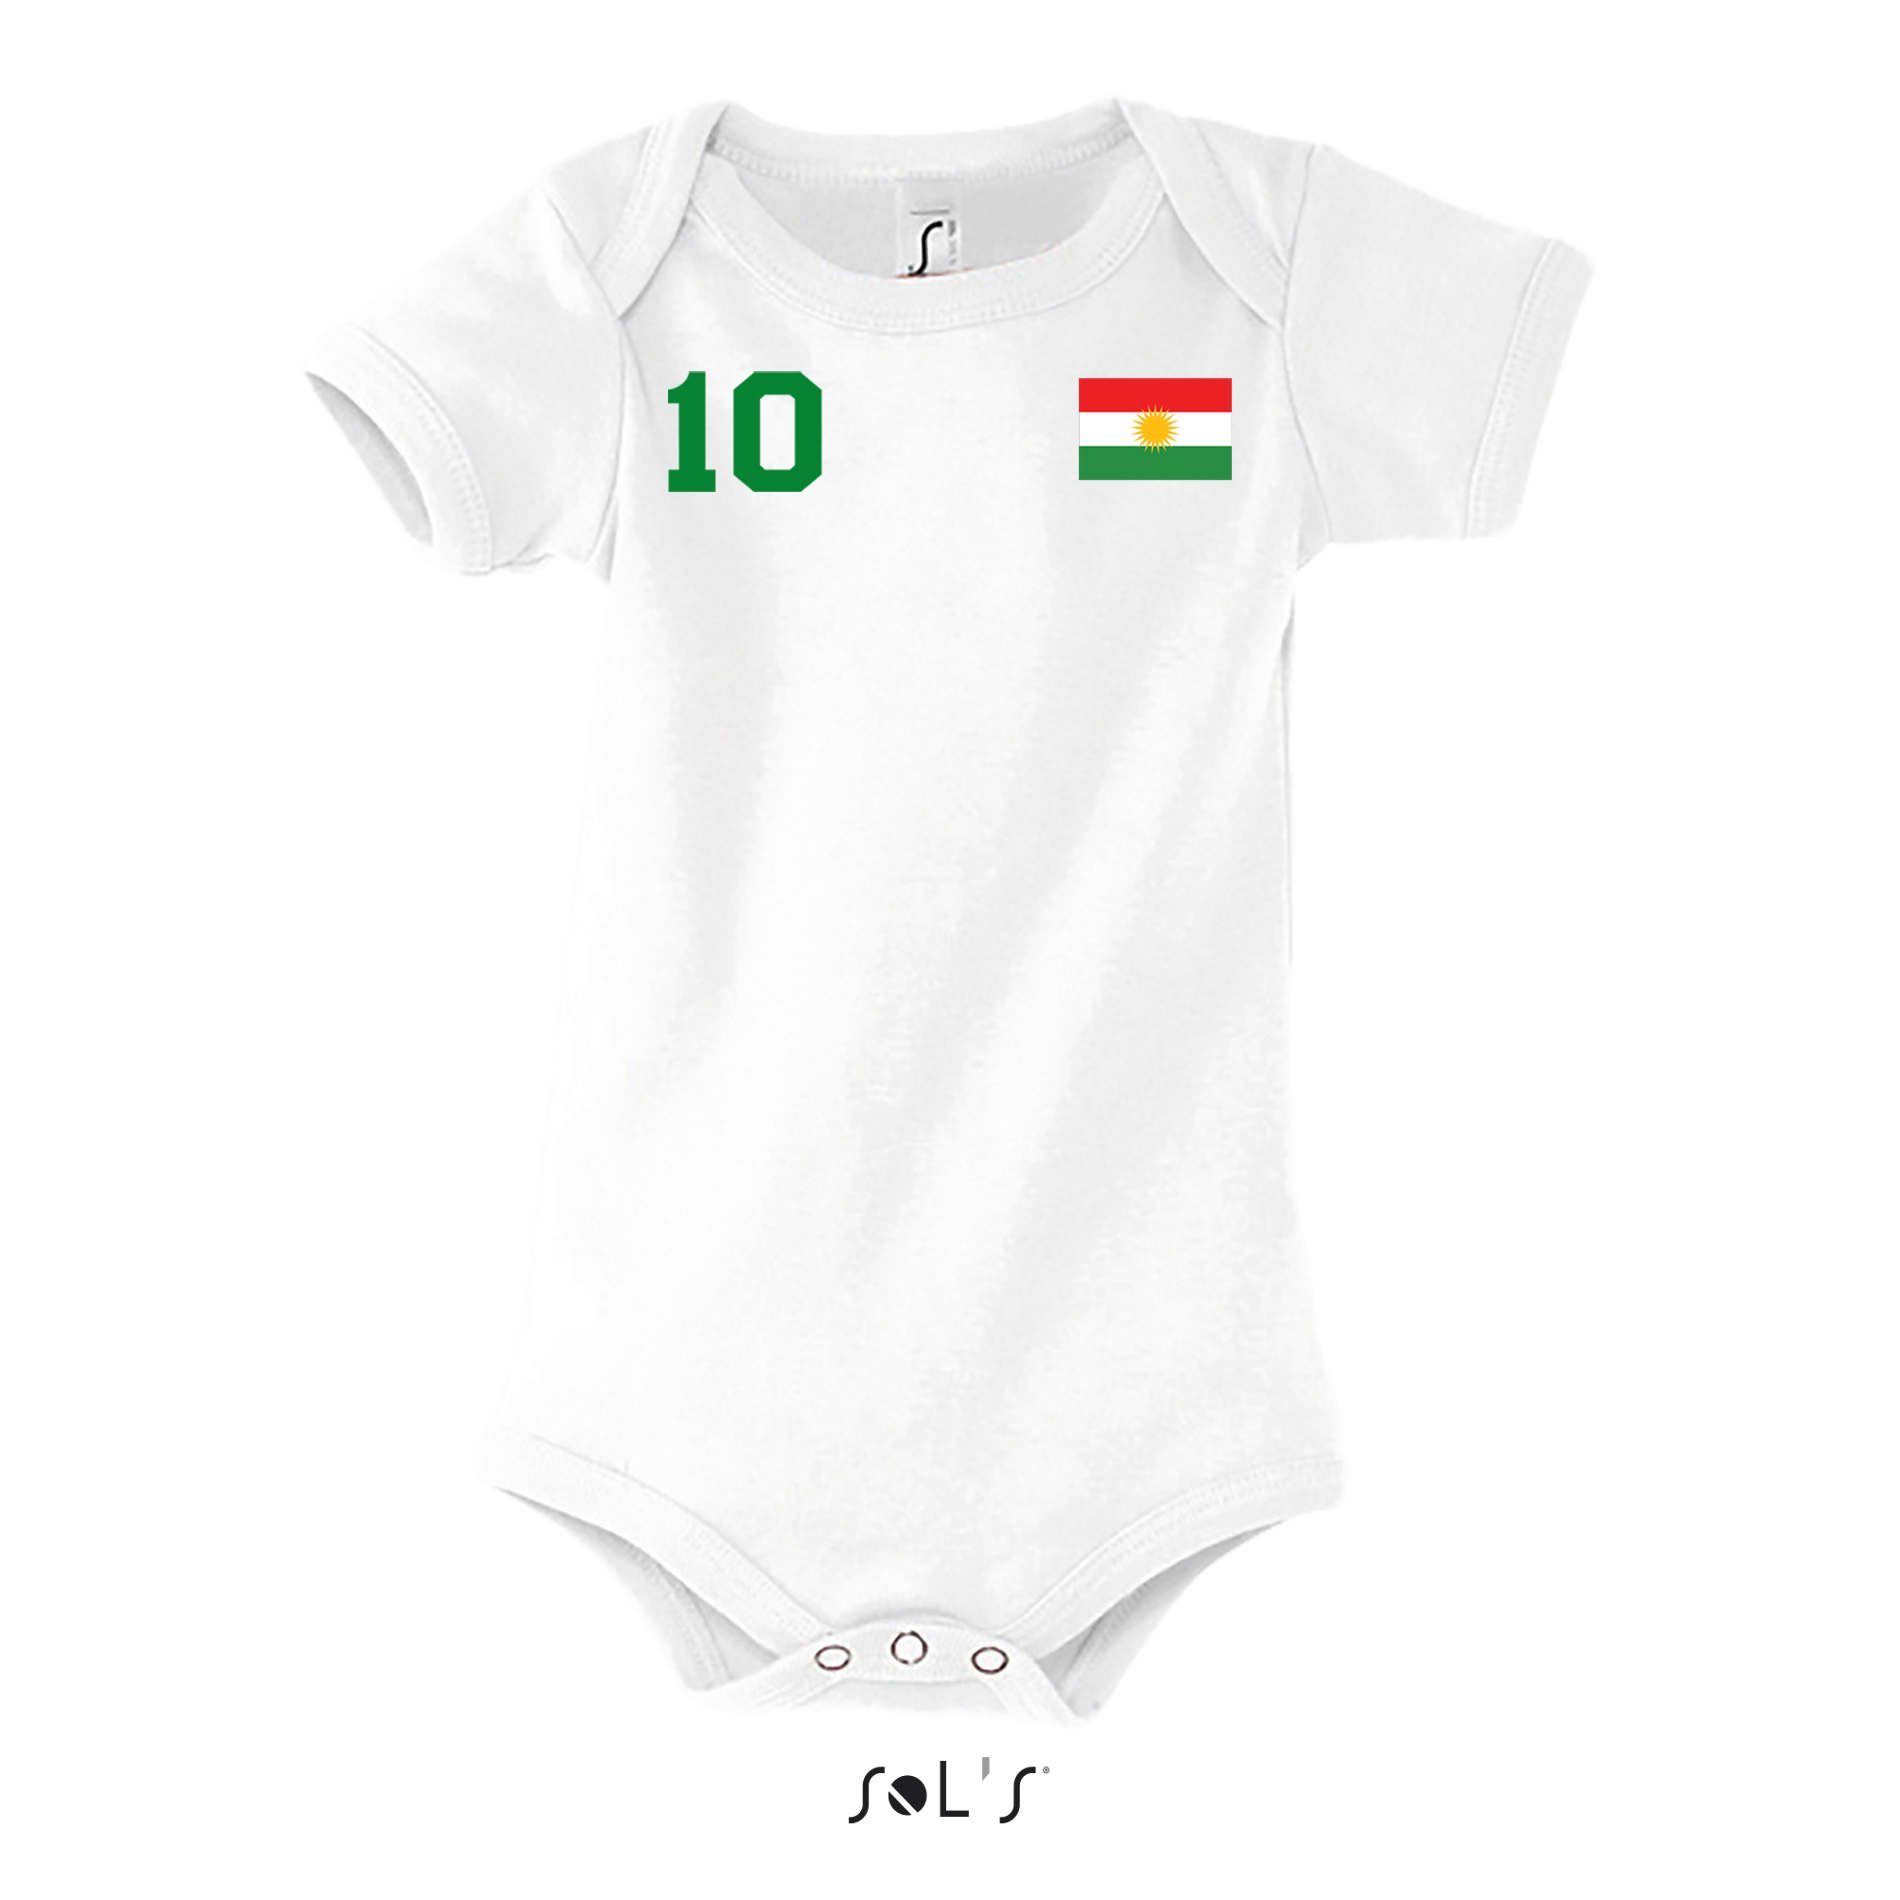 Kurdistan Meister Kinder Trikot WM Strampler Fußball Brownie Blondie Fan & Baby Grün/Weiß Sport